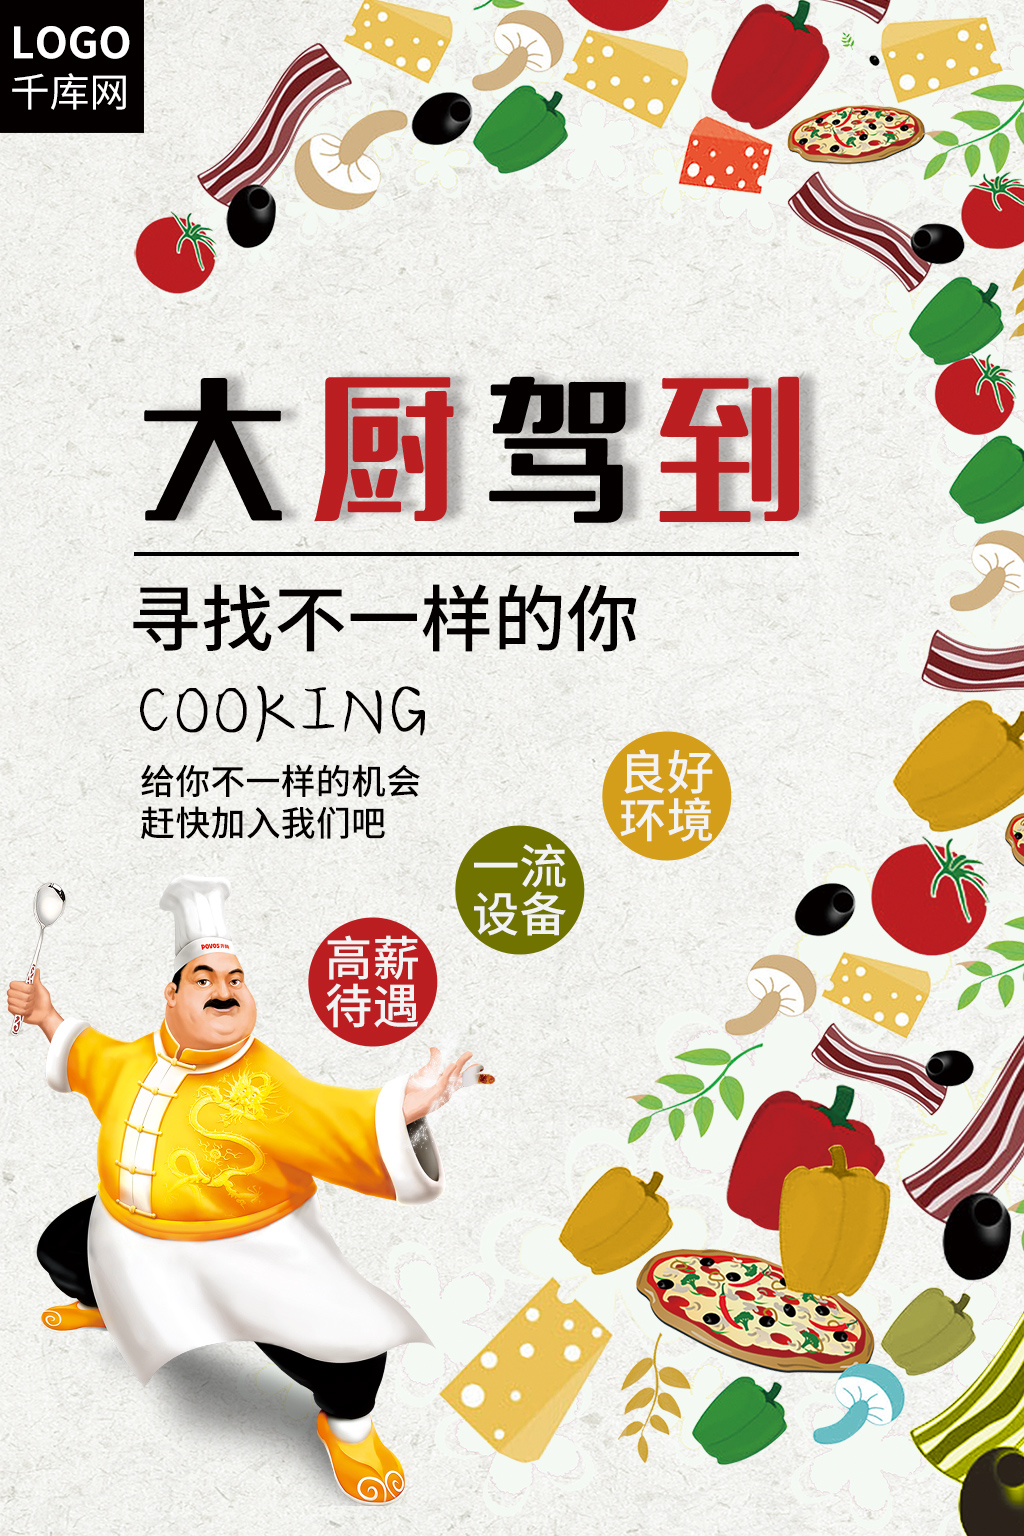 【粵厨新星】几个小秘技，乡村厨师“土味”煮鸡秒变靓鸡大菜